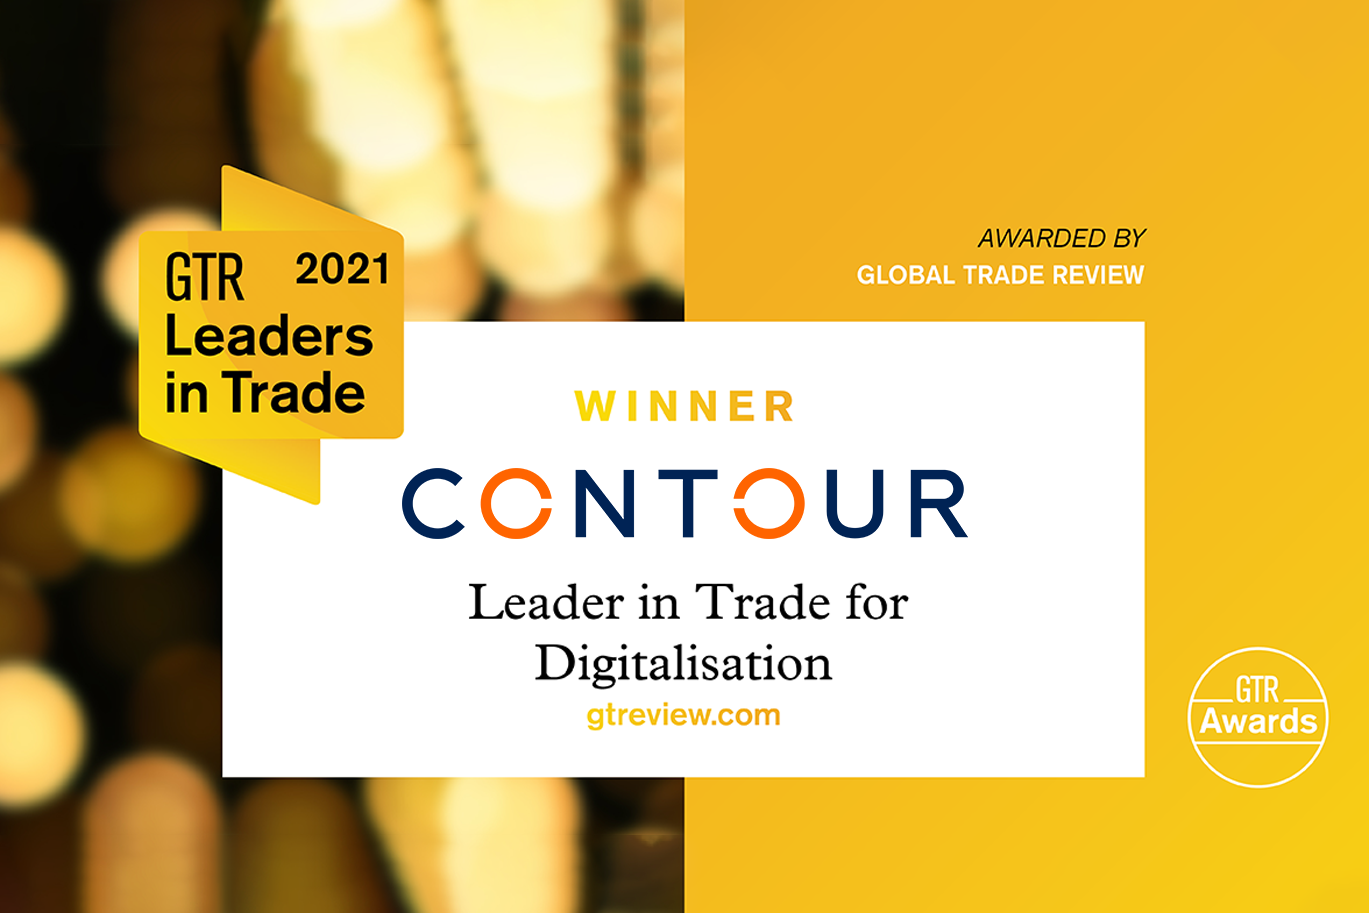 Contour named Leader in Trade for Digitalisation at 2021 GTR Awards